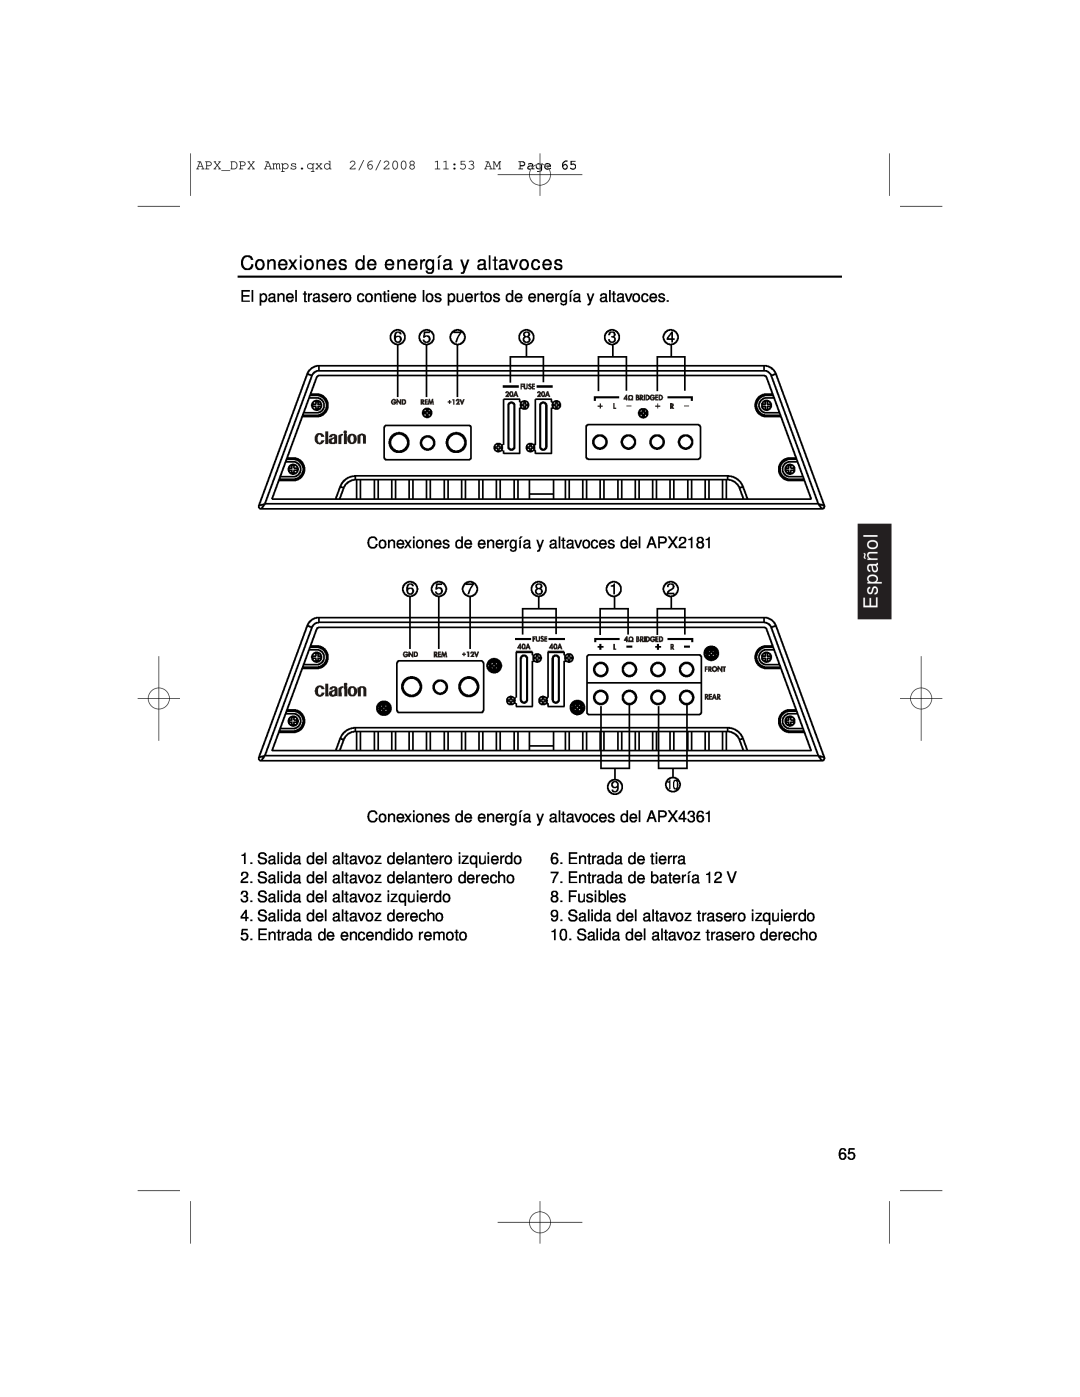 Clarion APX4361, DPX11551, APX2181 Conexiones de energía y altavoces, Español, Salida del altavoz trasero izquierdo 